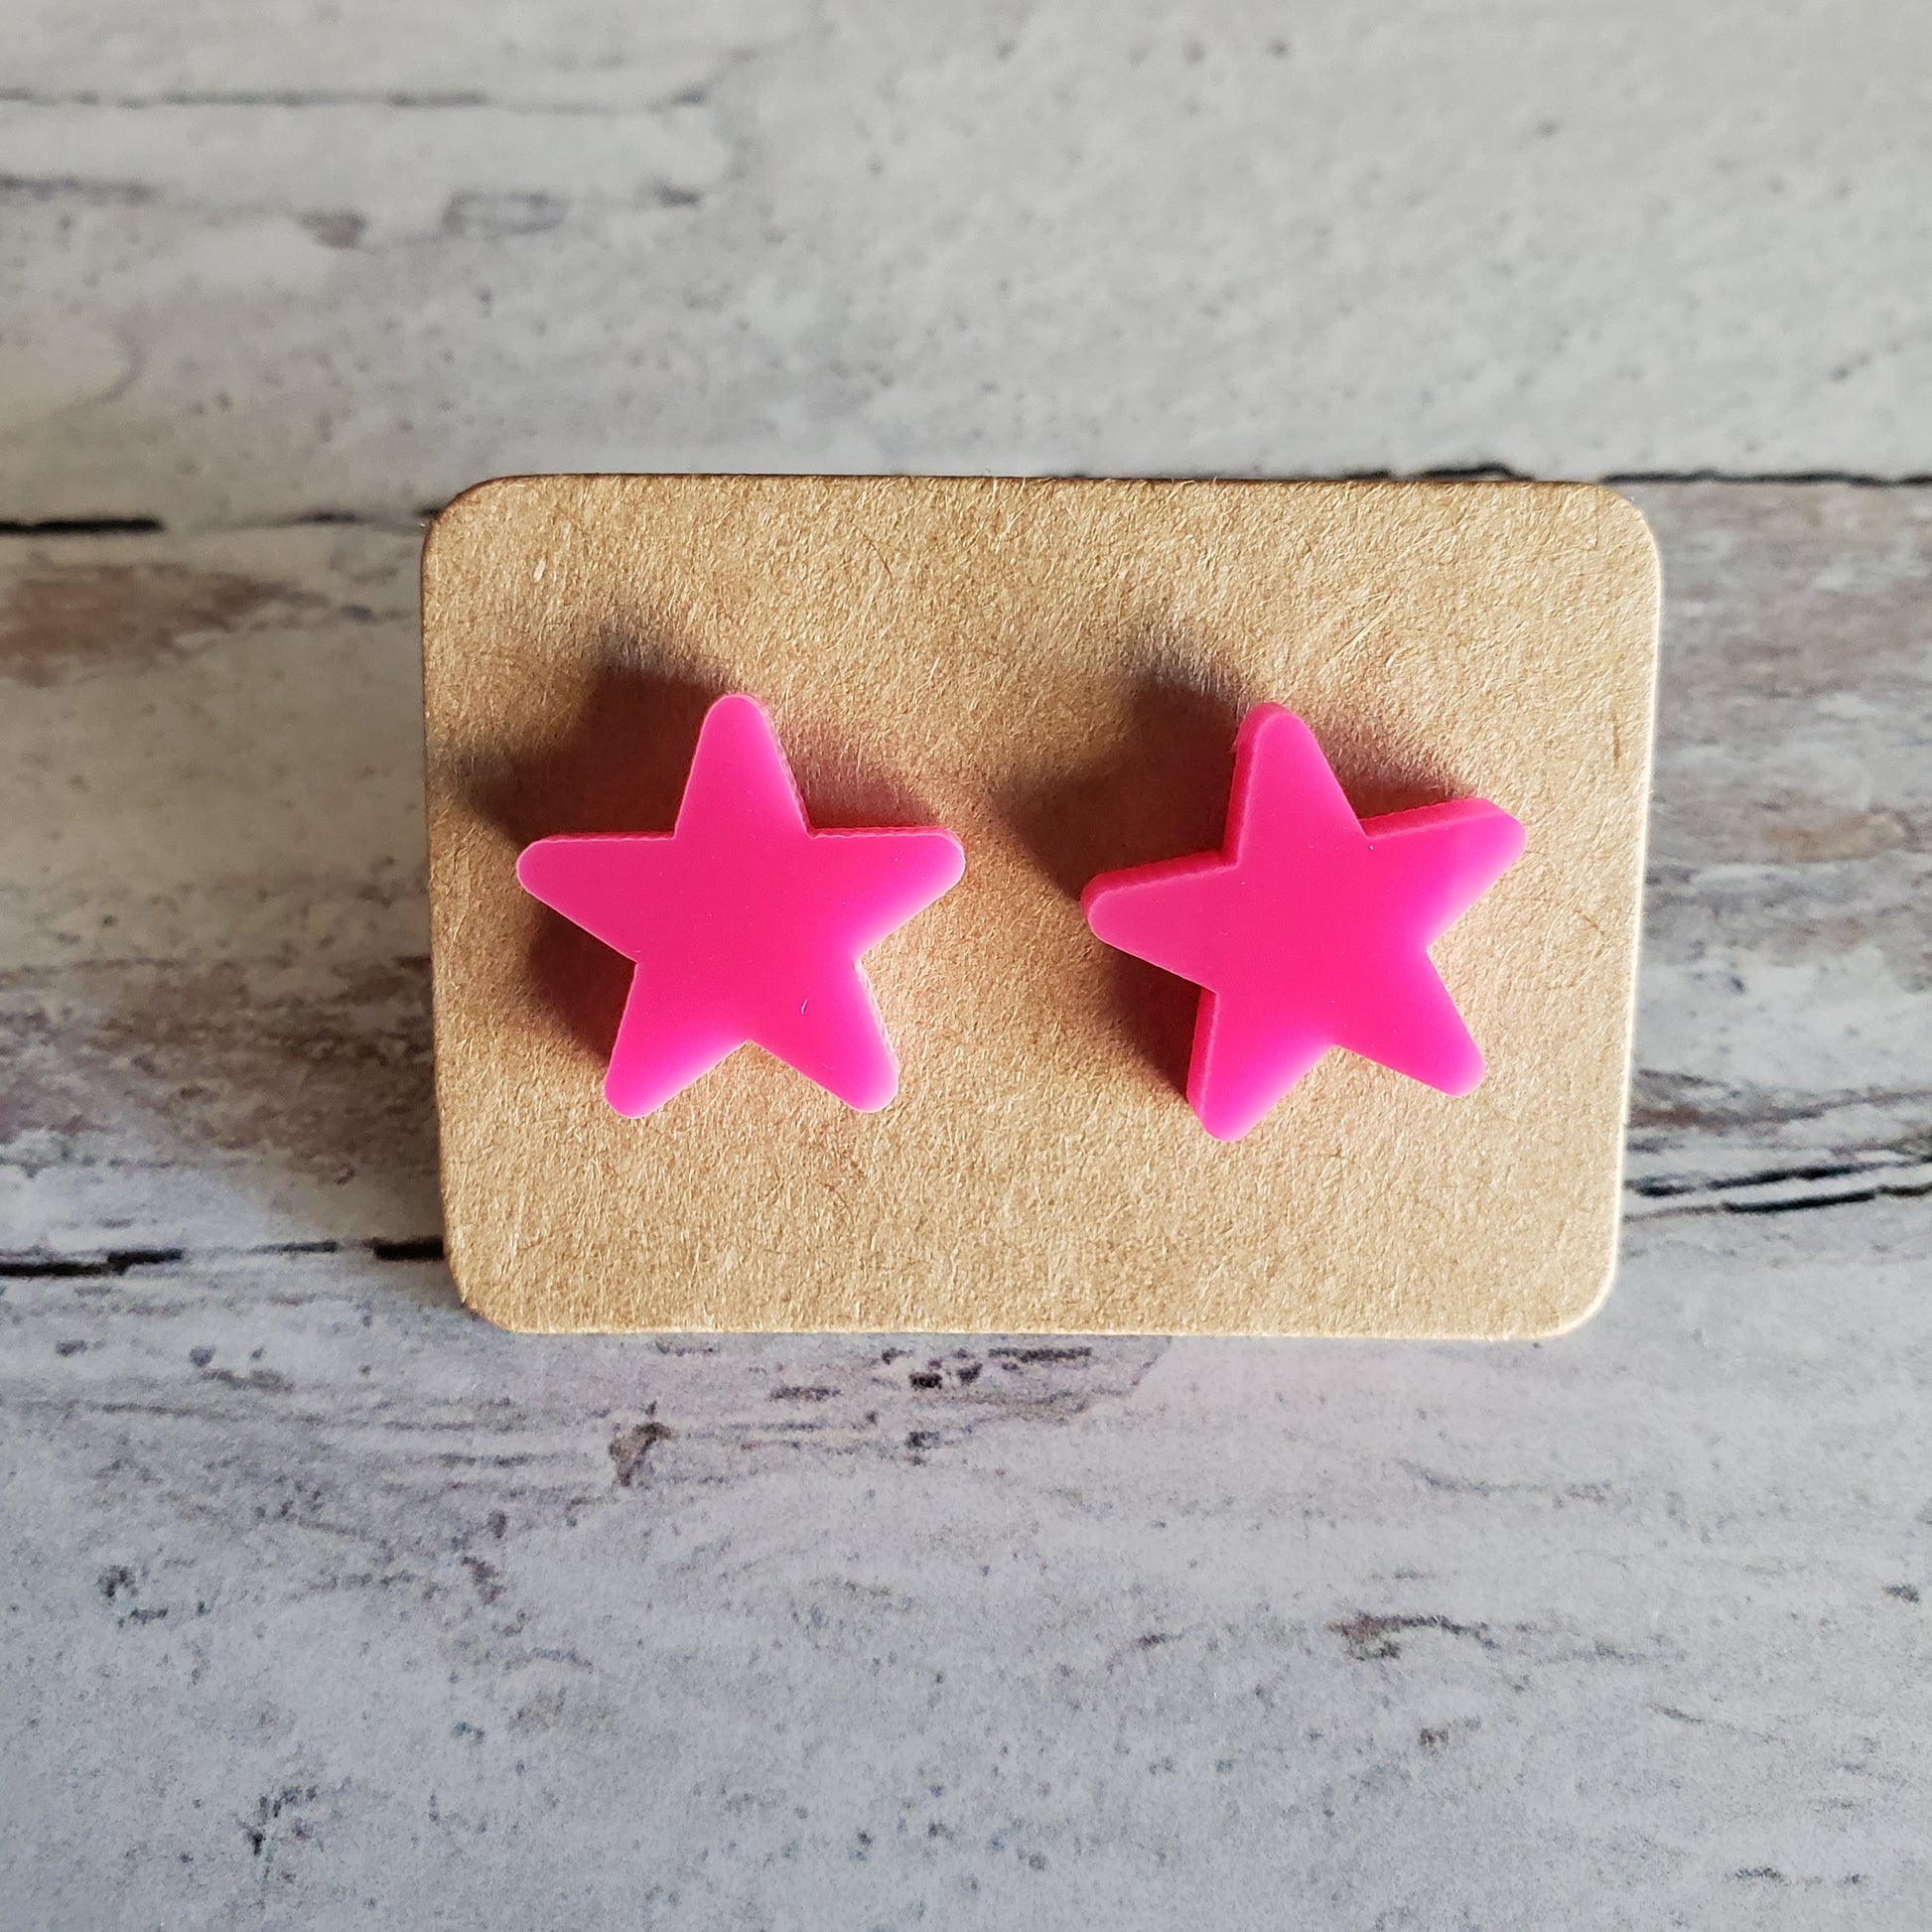 Hot pink star stud earrings on earring card